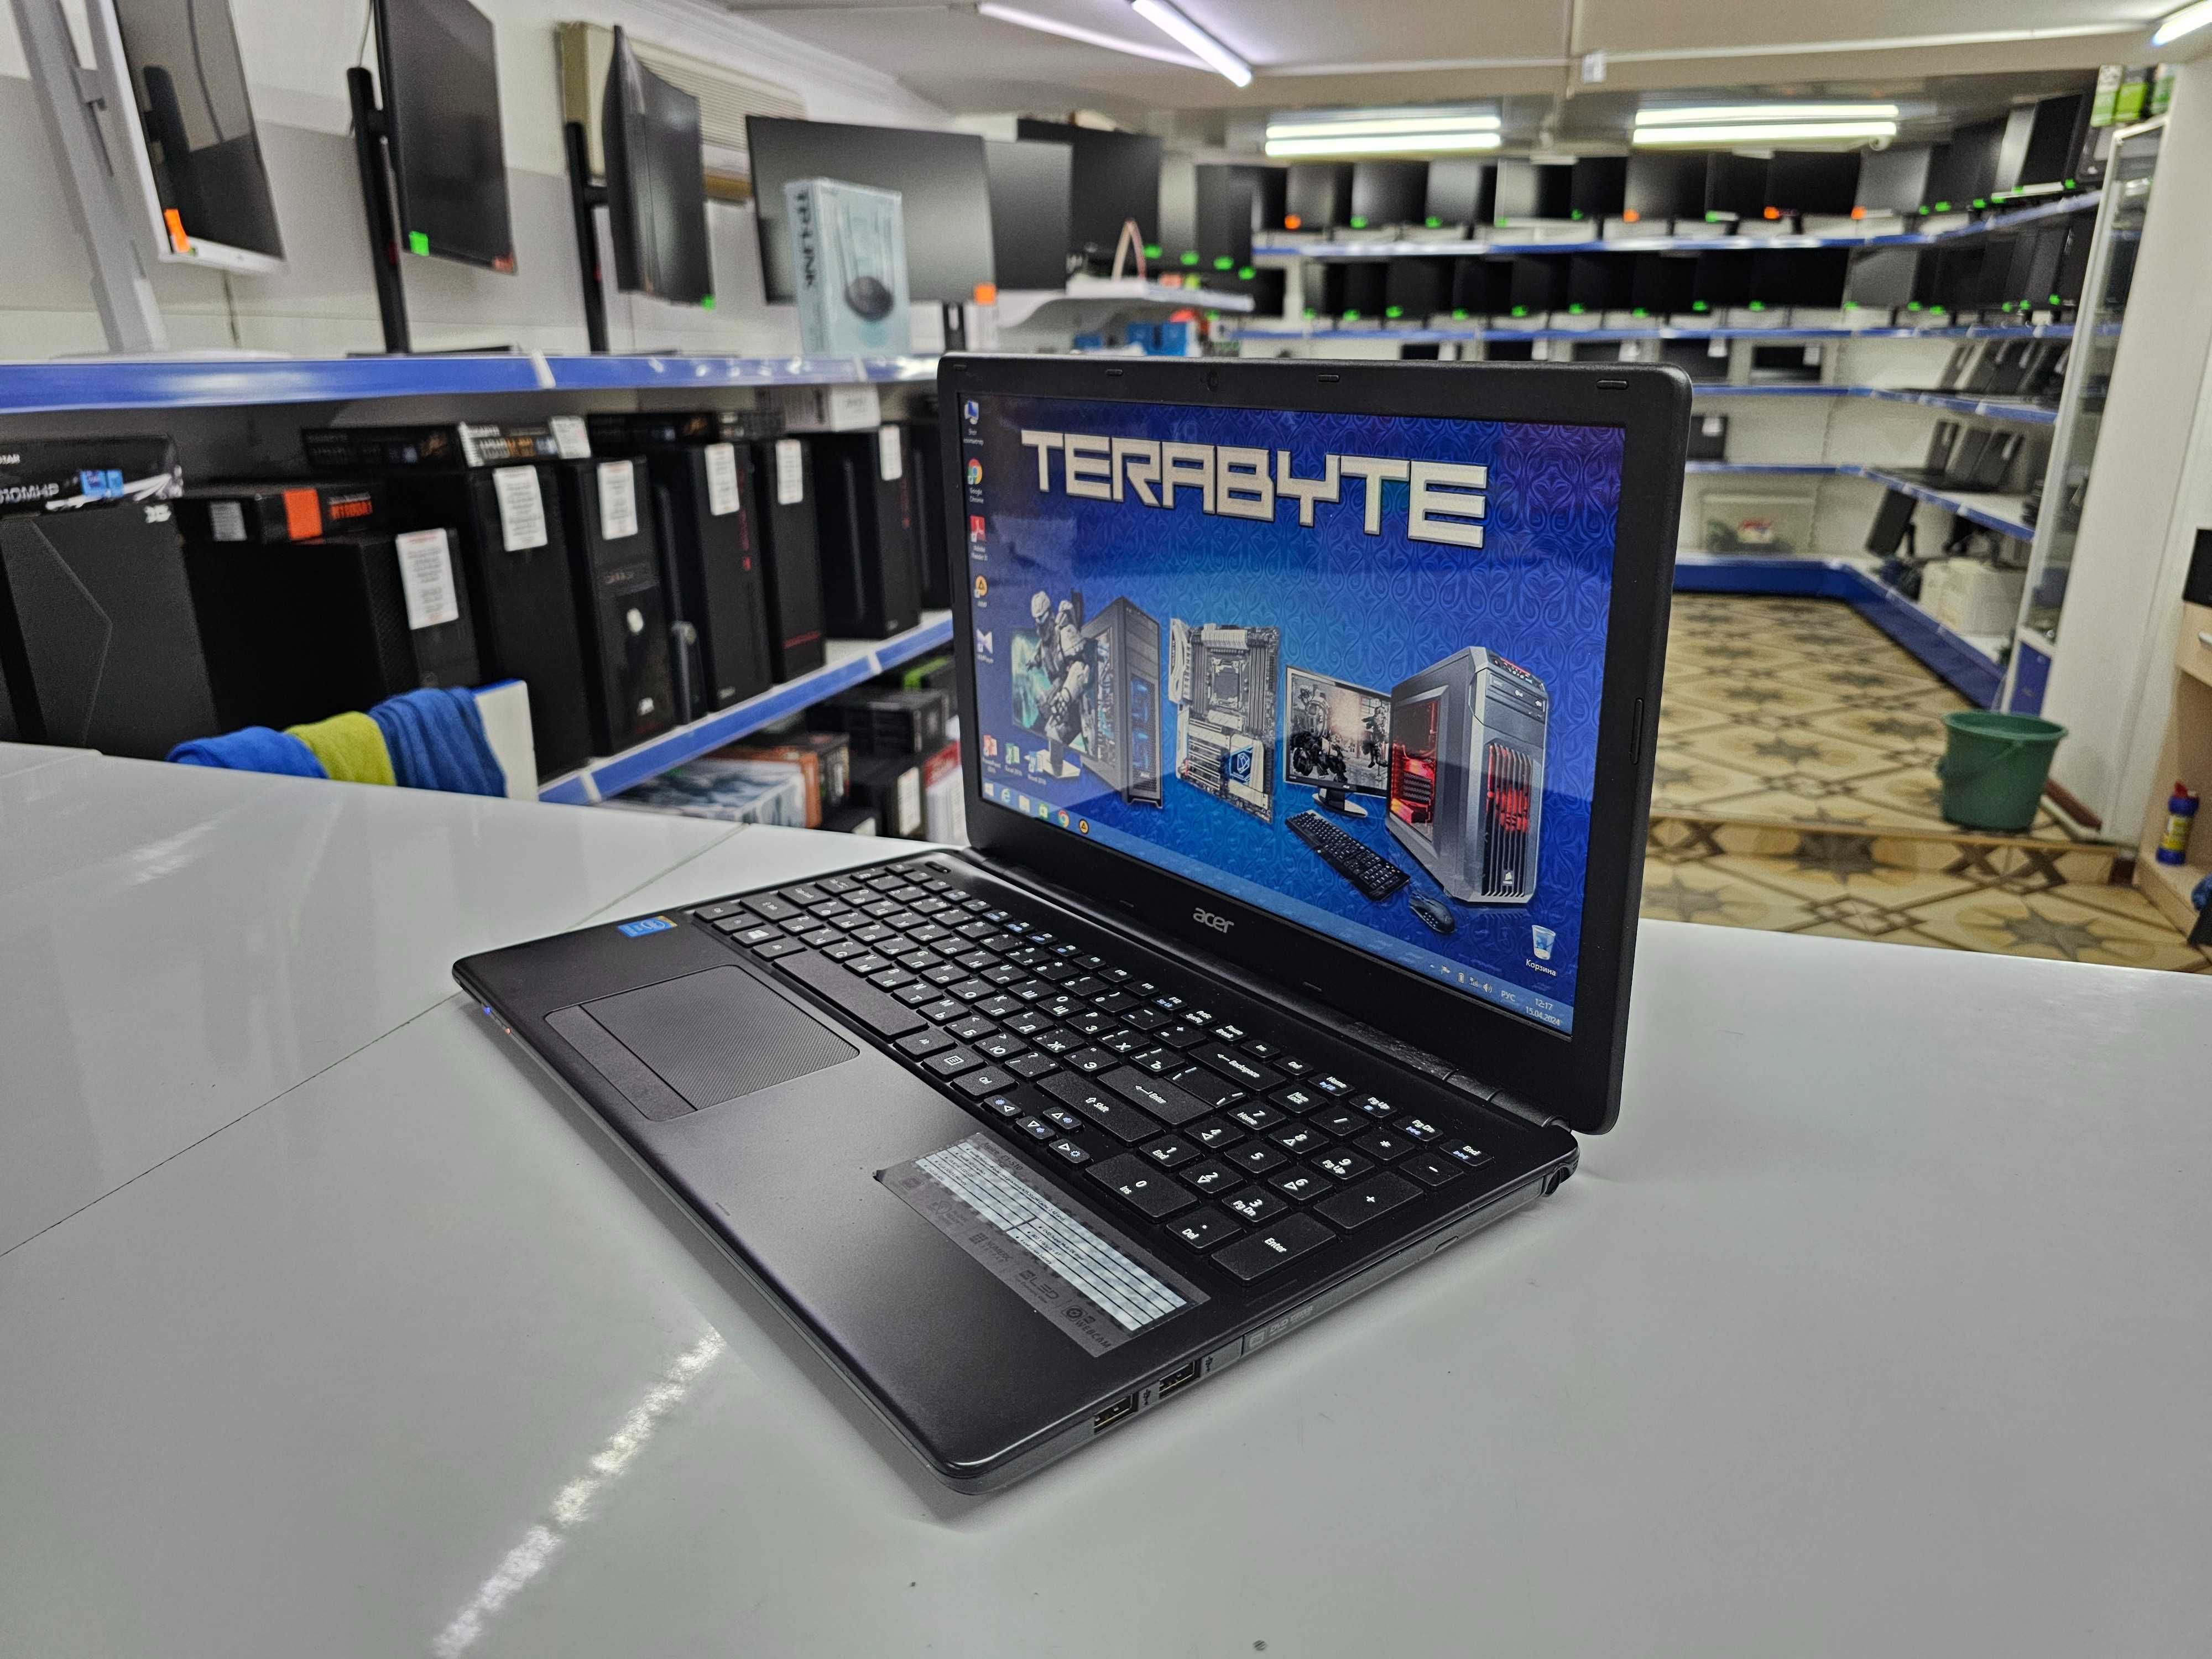 Ноутбук(Б\У) Acer Pentium N3520+4Gb+HDD750Gb+15.6"\"TERABYTE"